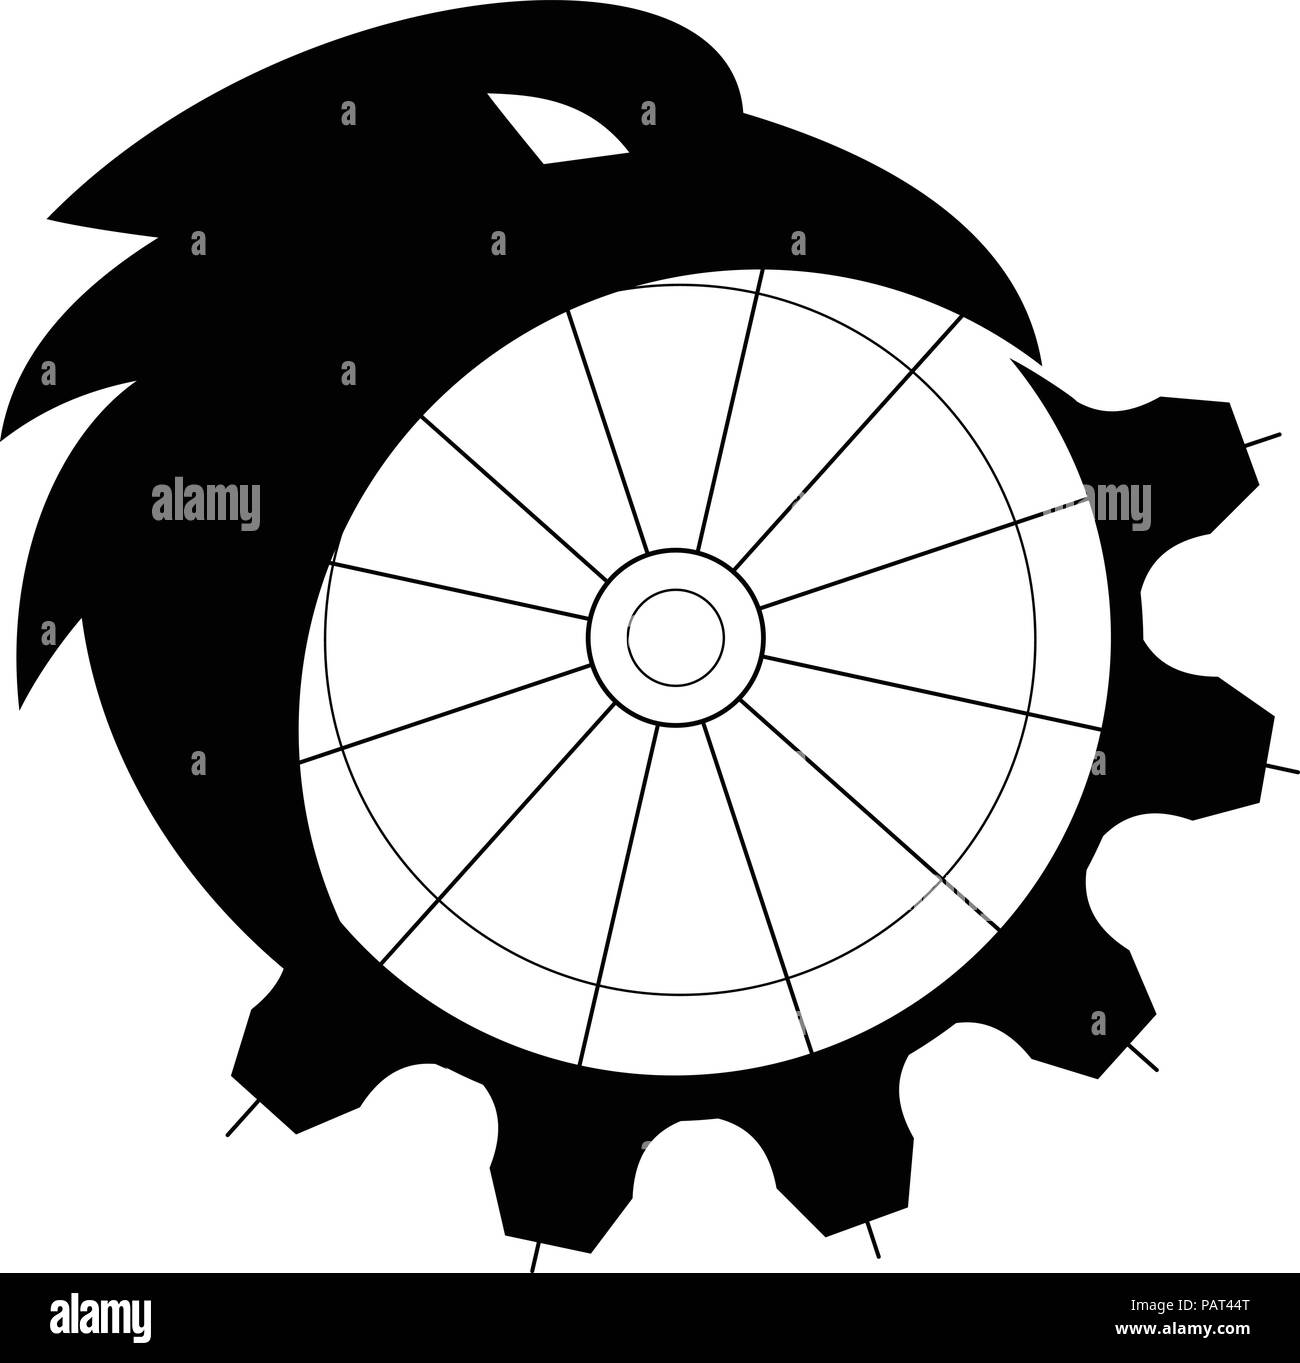 Retro Stil Abbildung: die Silhouette eines Crow, Kolkrabe oder nördlichen Raven, einen großen schwarzen Säugetierart, zusammenführen oder Morphing in ein Stock Vektor